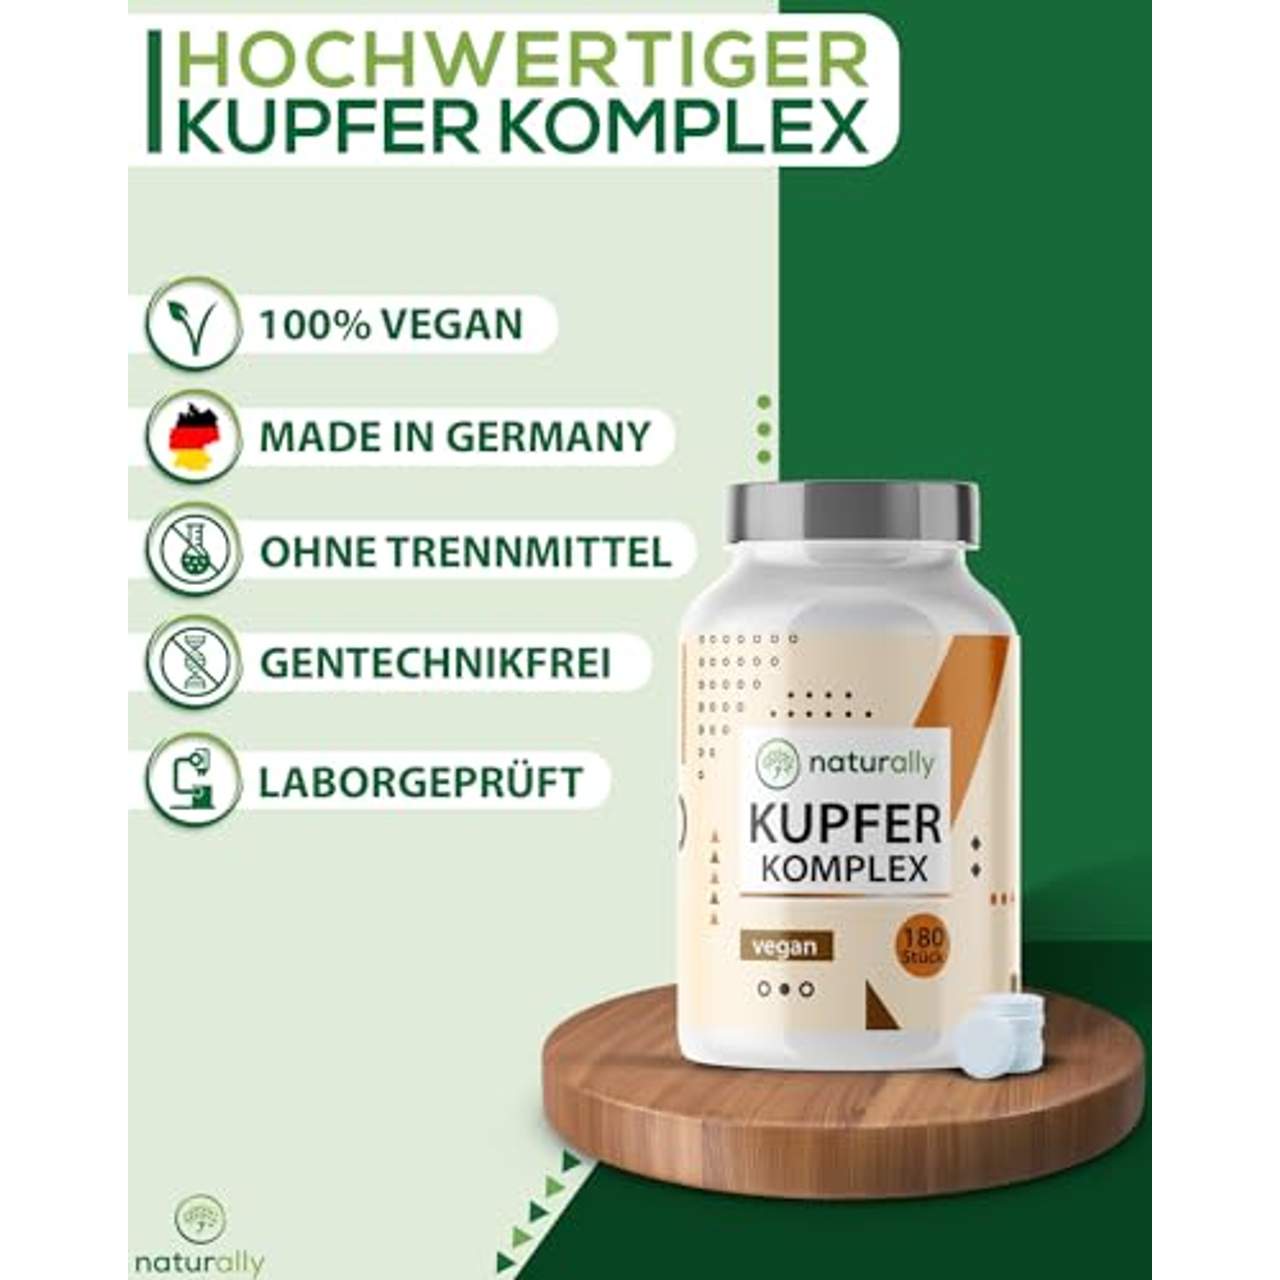 naturally 2mg Kupfer Tabletten